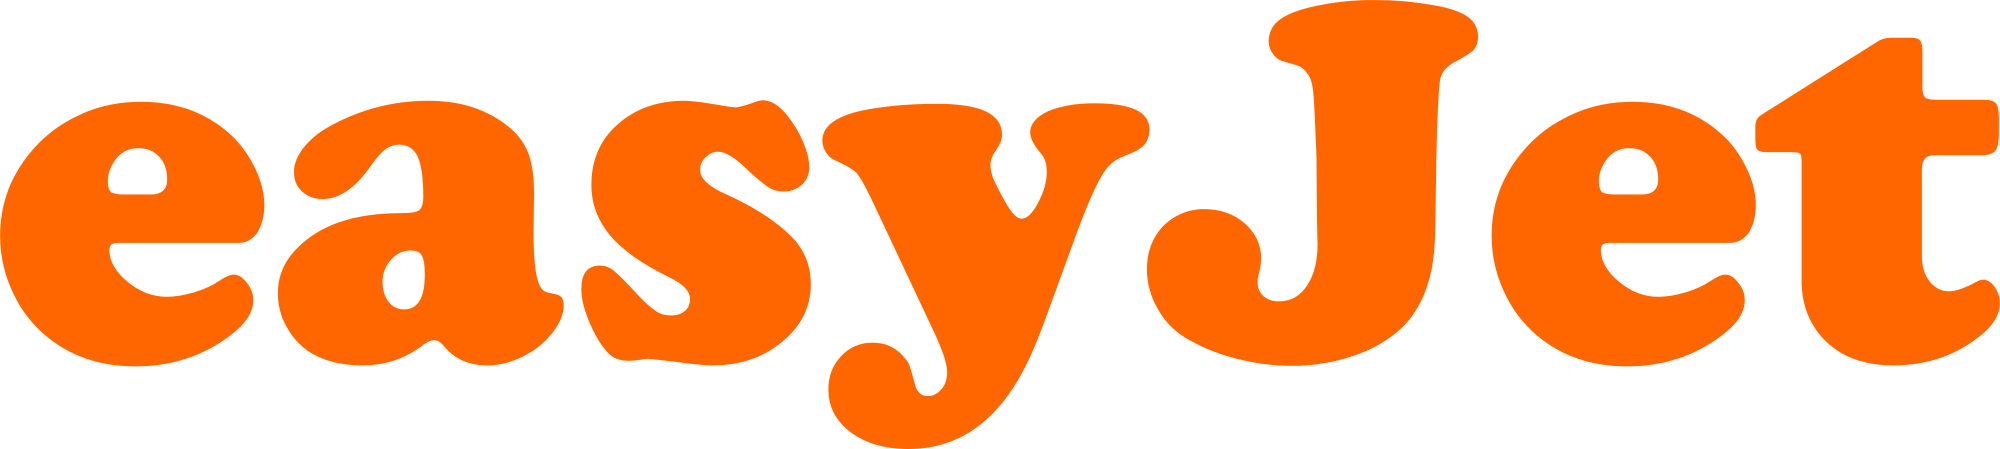 EasyJet_logo.svg.png